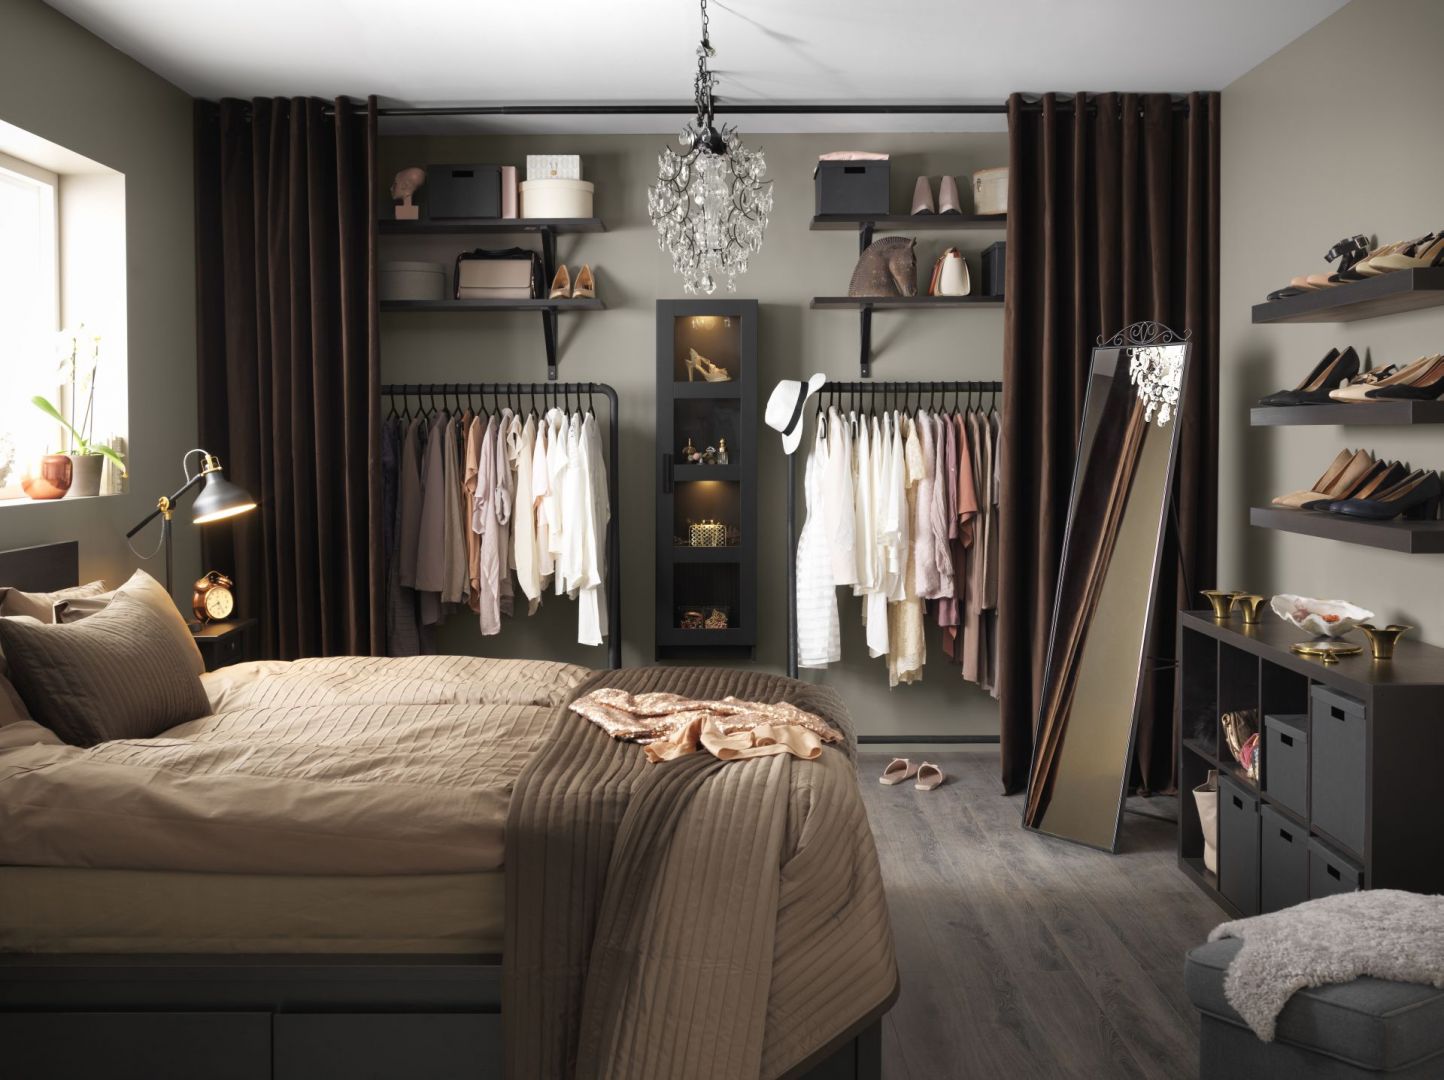 Garderoba ukryta za kotarą będzie ciekawą dekoracją sypialni. Fot. IKEA